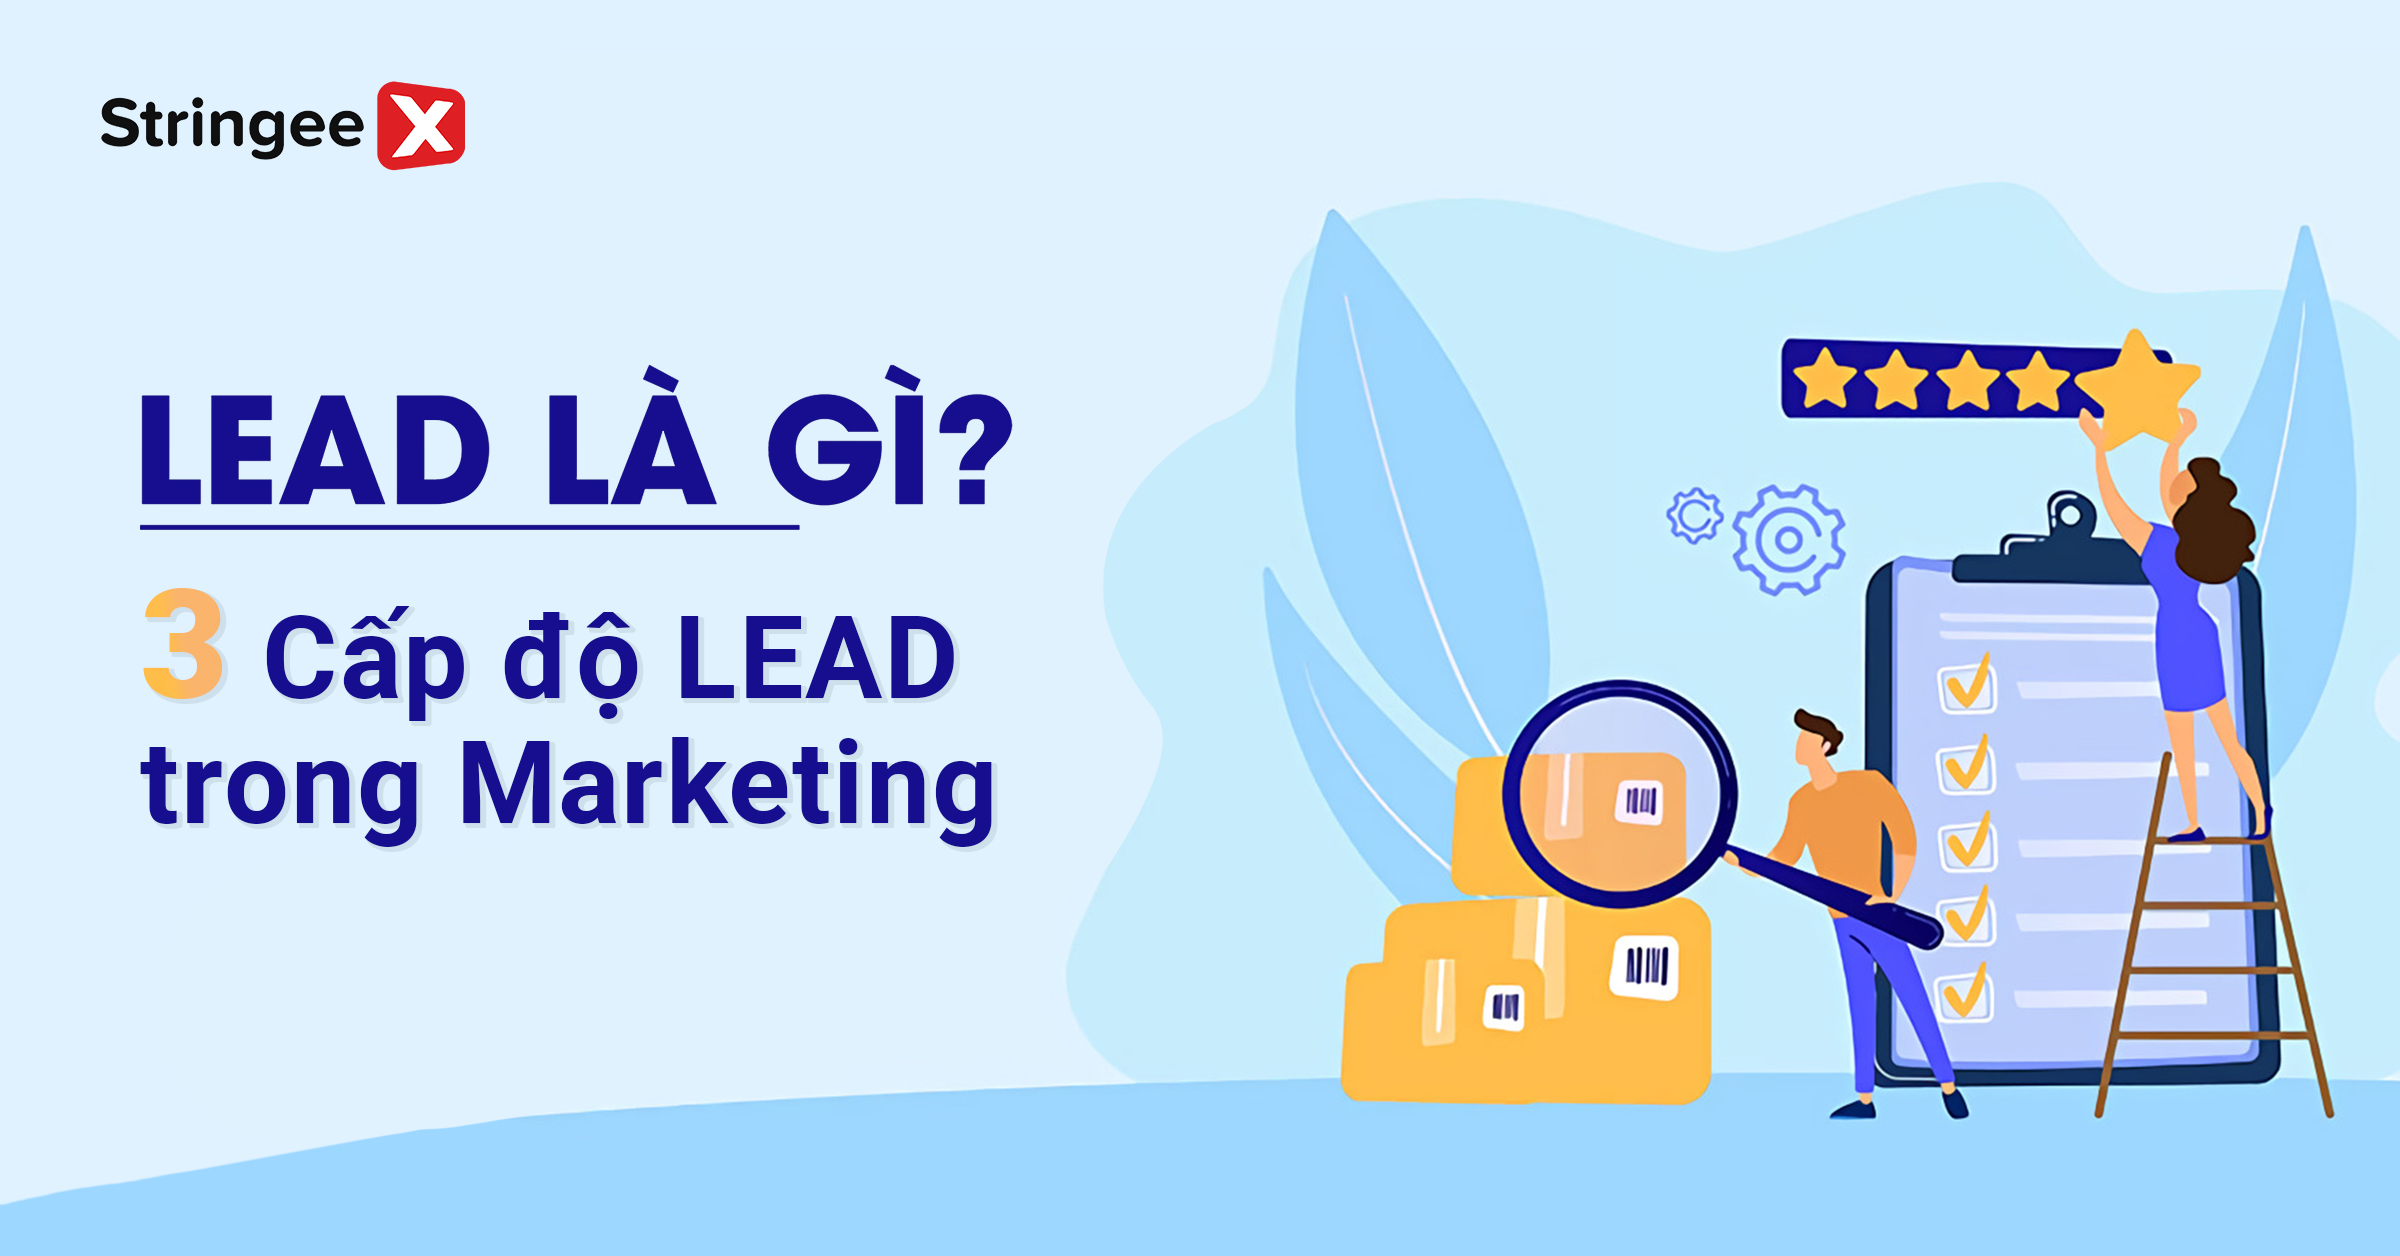 Lead trong Marketing là gì? 3 cấp độ của Lead bạn cần biết